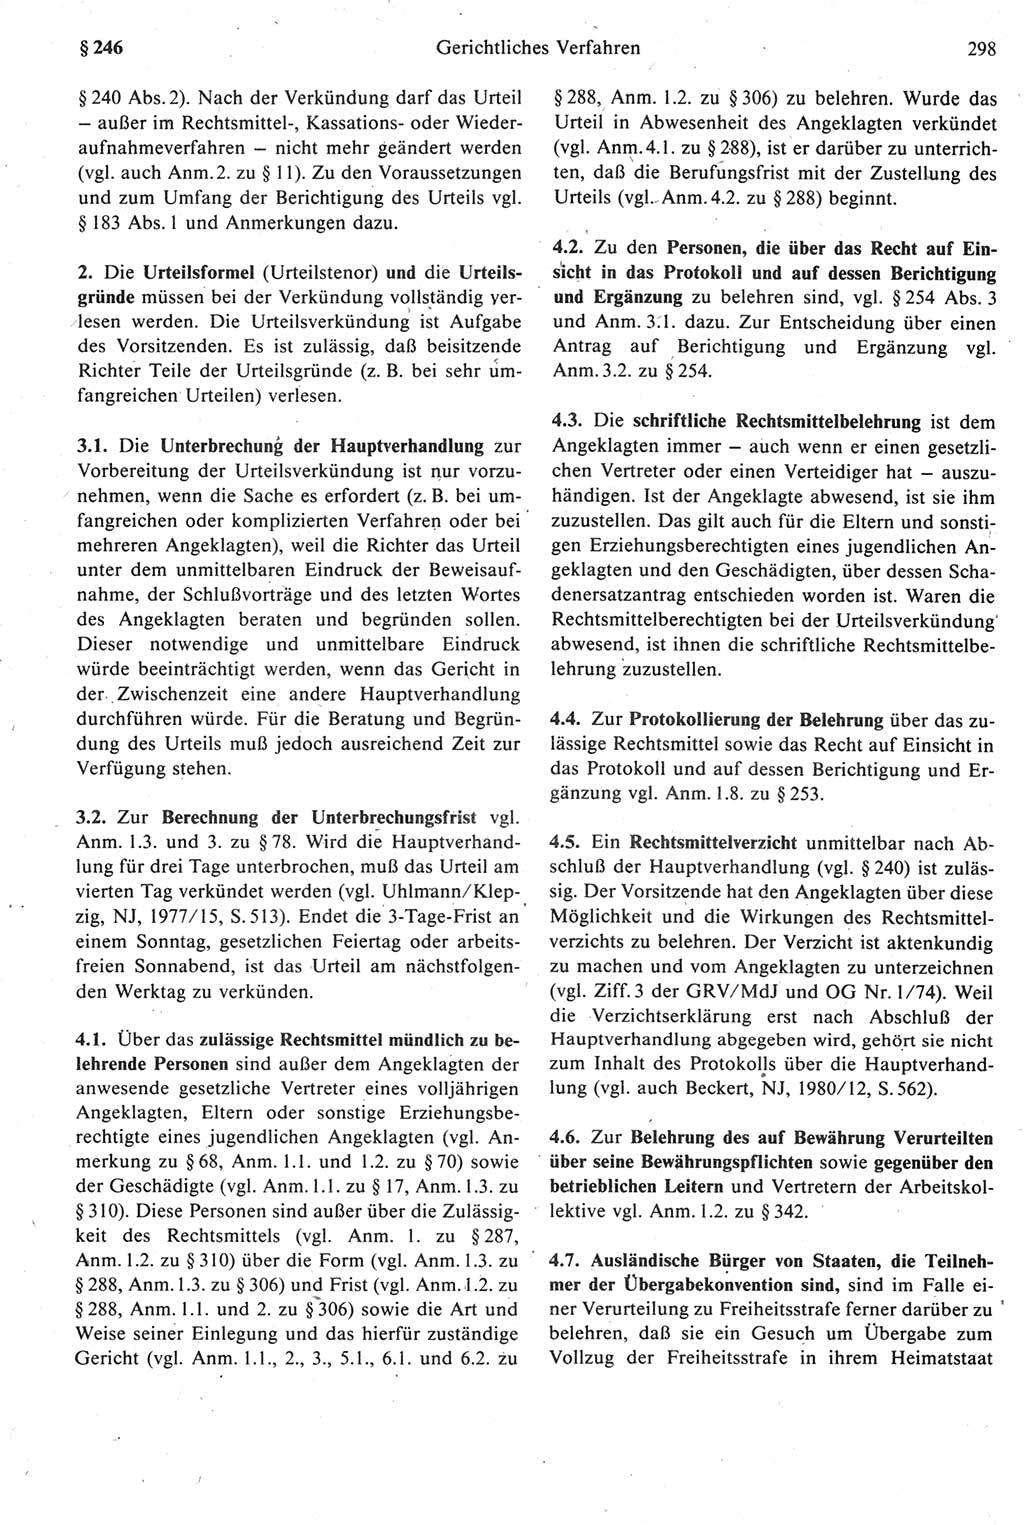 Strafprozeßrecht der DDR [Deutsche Demokratische Republik], Kommentar zur Strafprozeßordnung (StPO) 1987, Seite 298 (Strafprozeßr. DDR Komm. StPO 1987, S. 298)